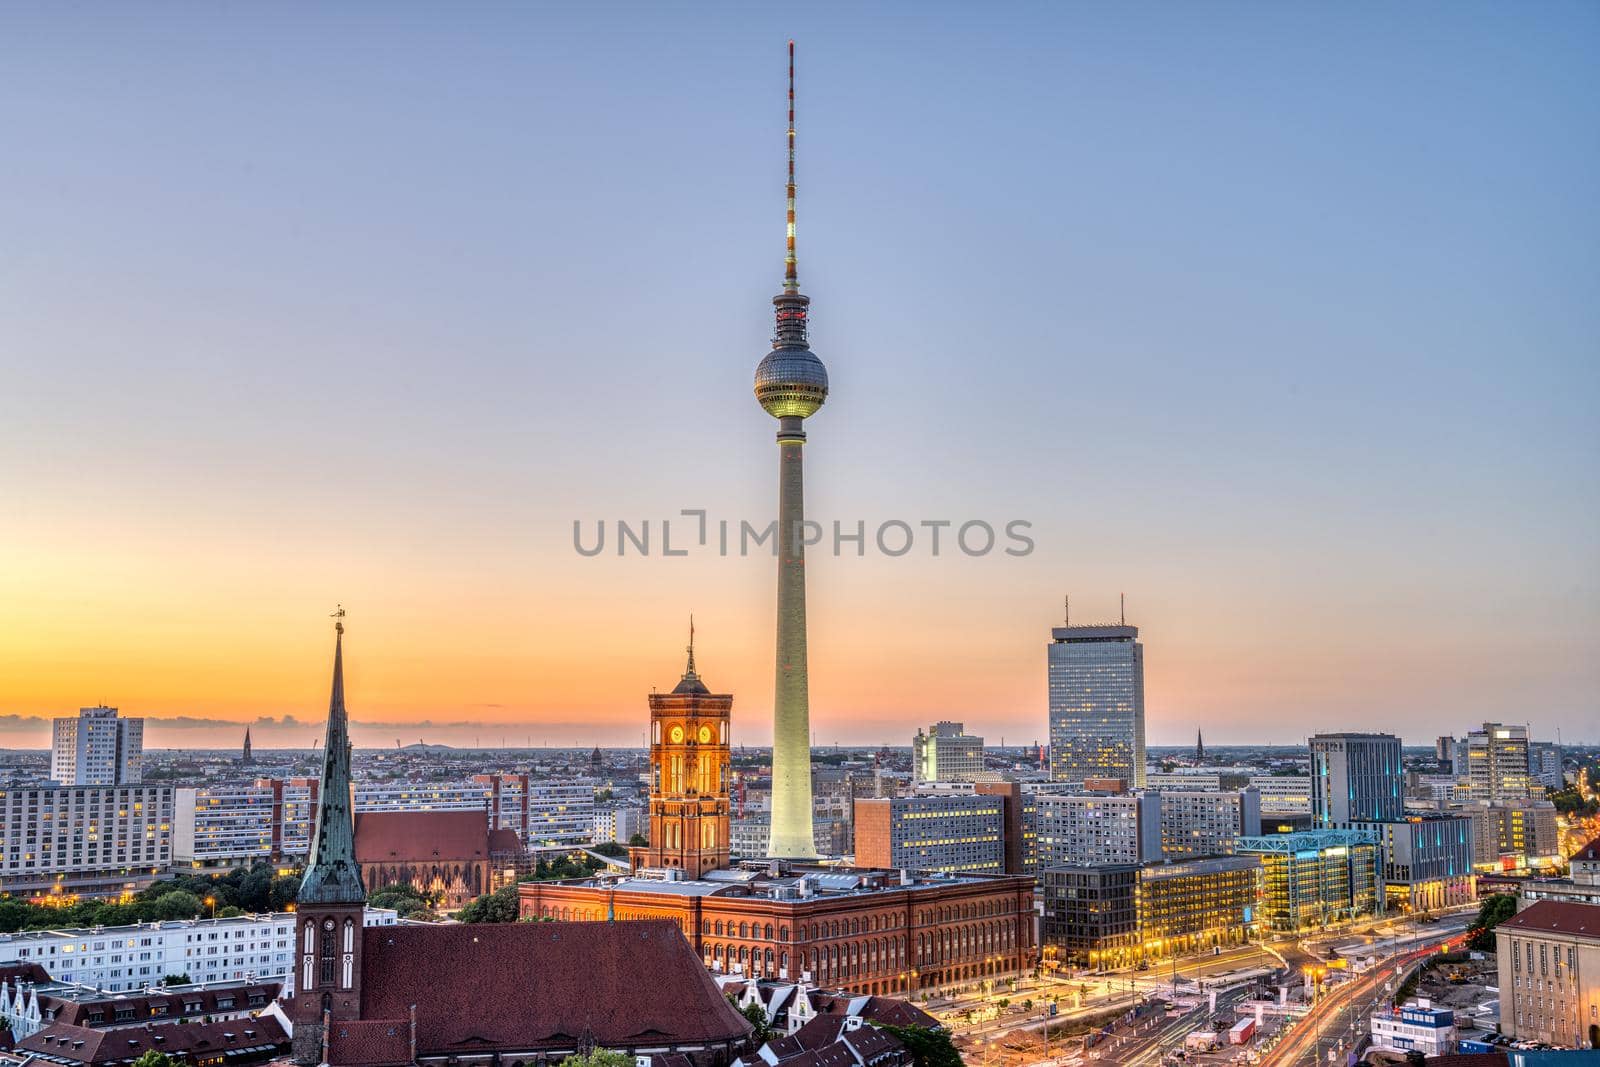 Downtown Berlin after sunset by elxeneize